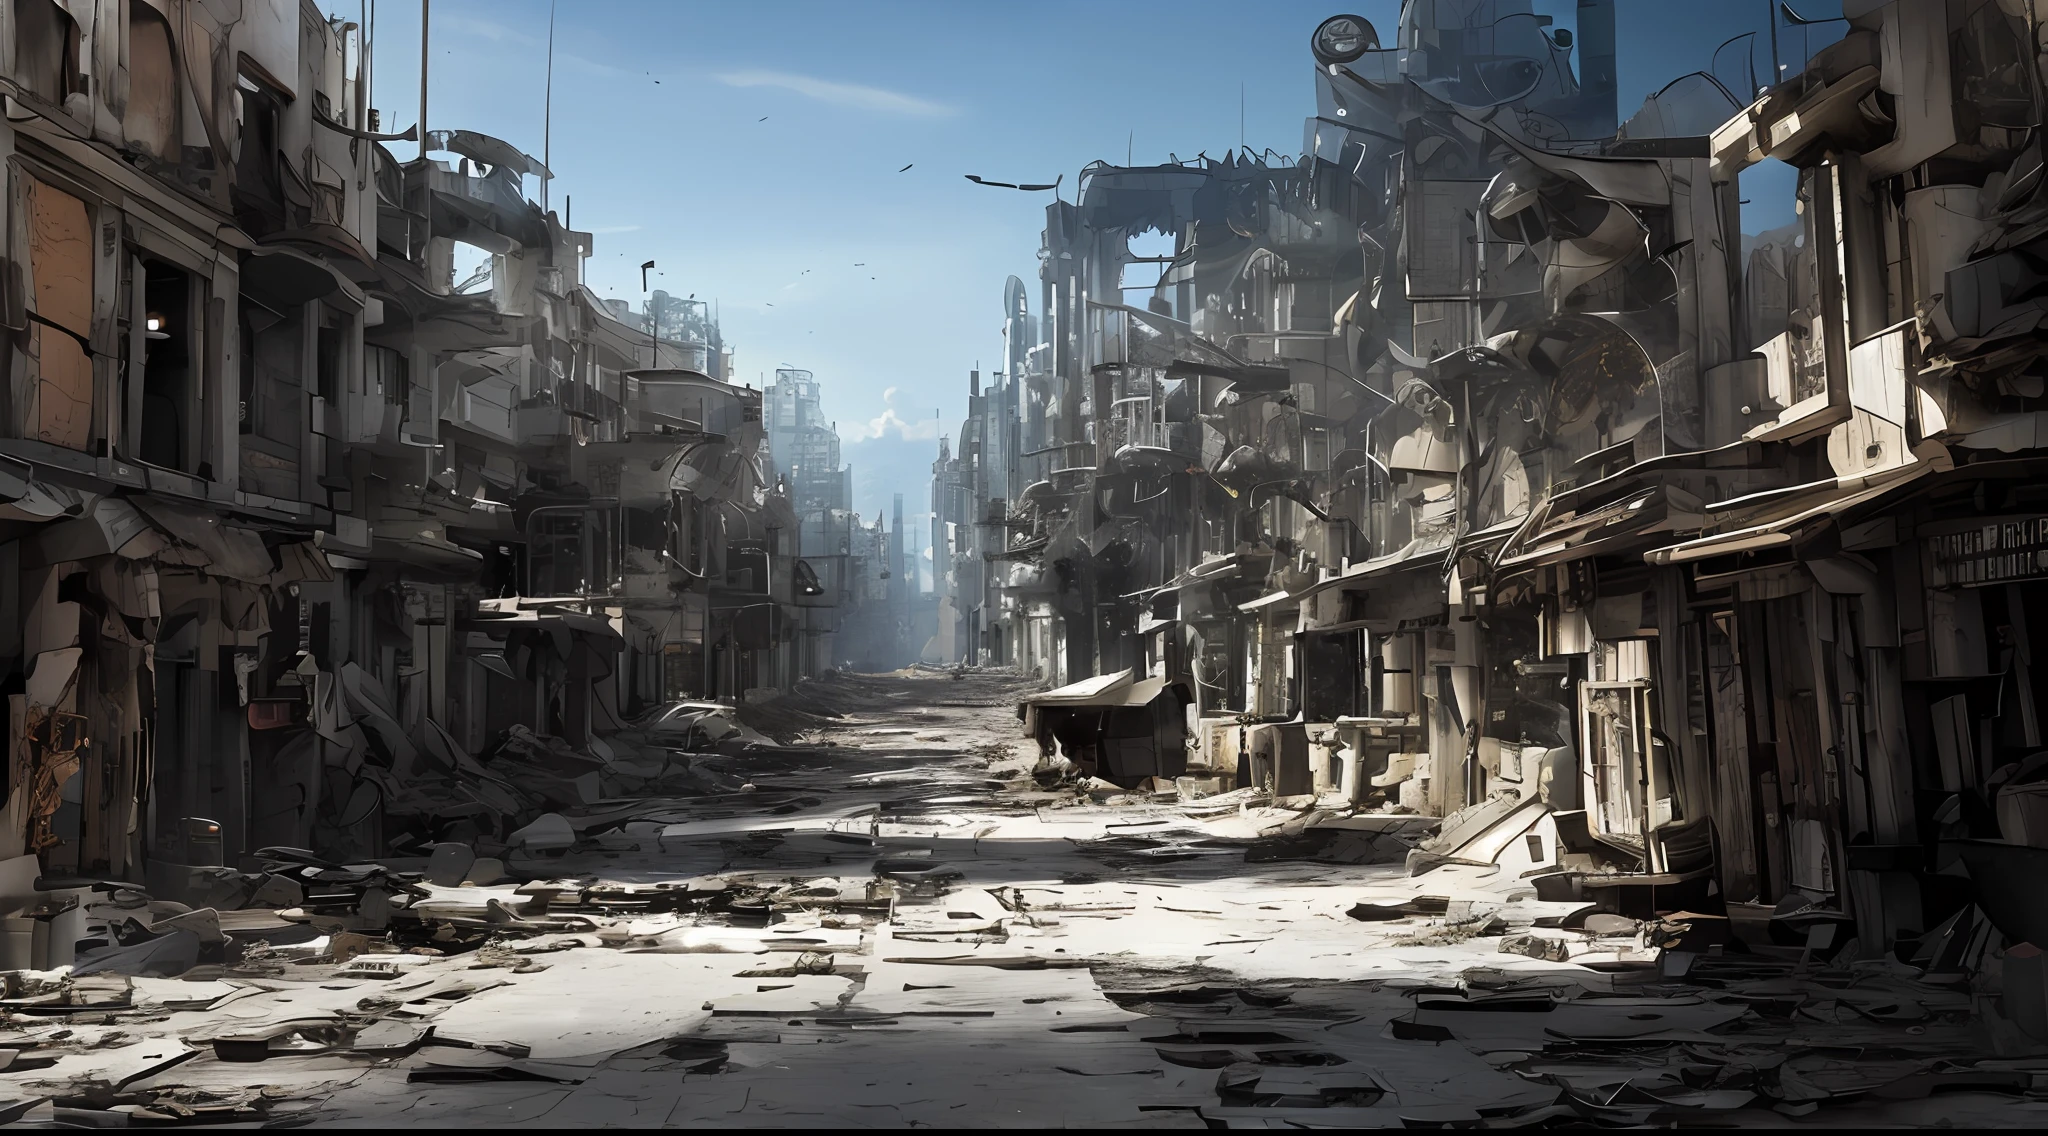 ville futuriste post-apocalyptique, Aiguilles de verre brisées, Rue pleine de débris, machines cassées